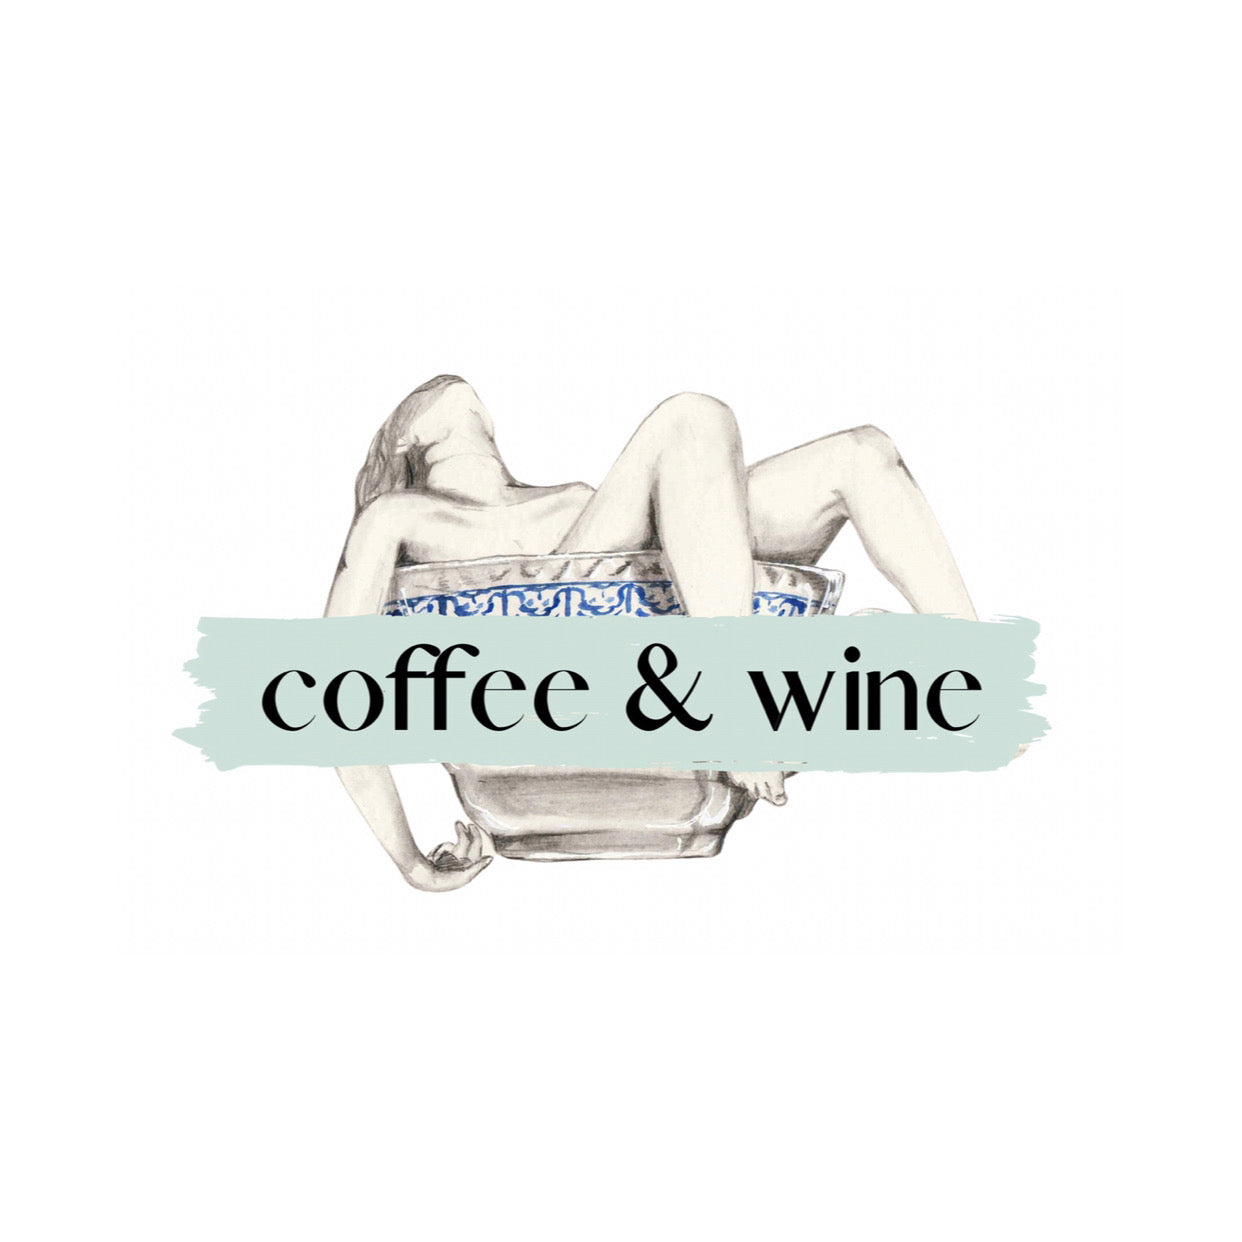 Coffee & Wine